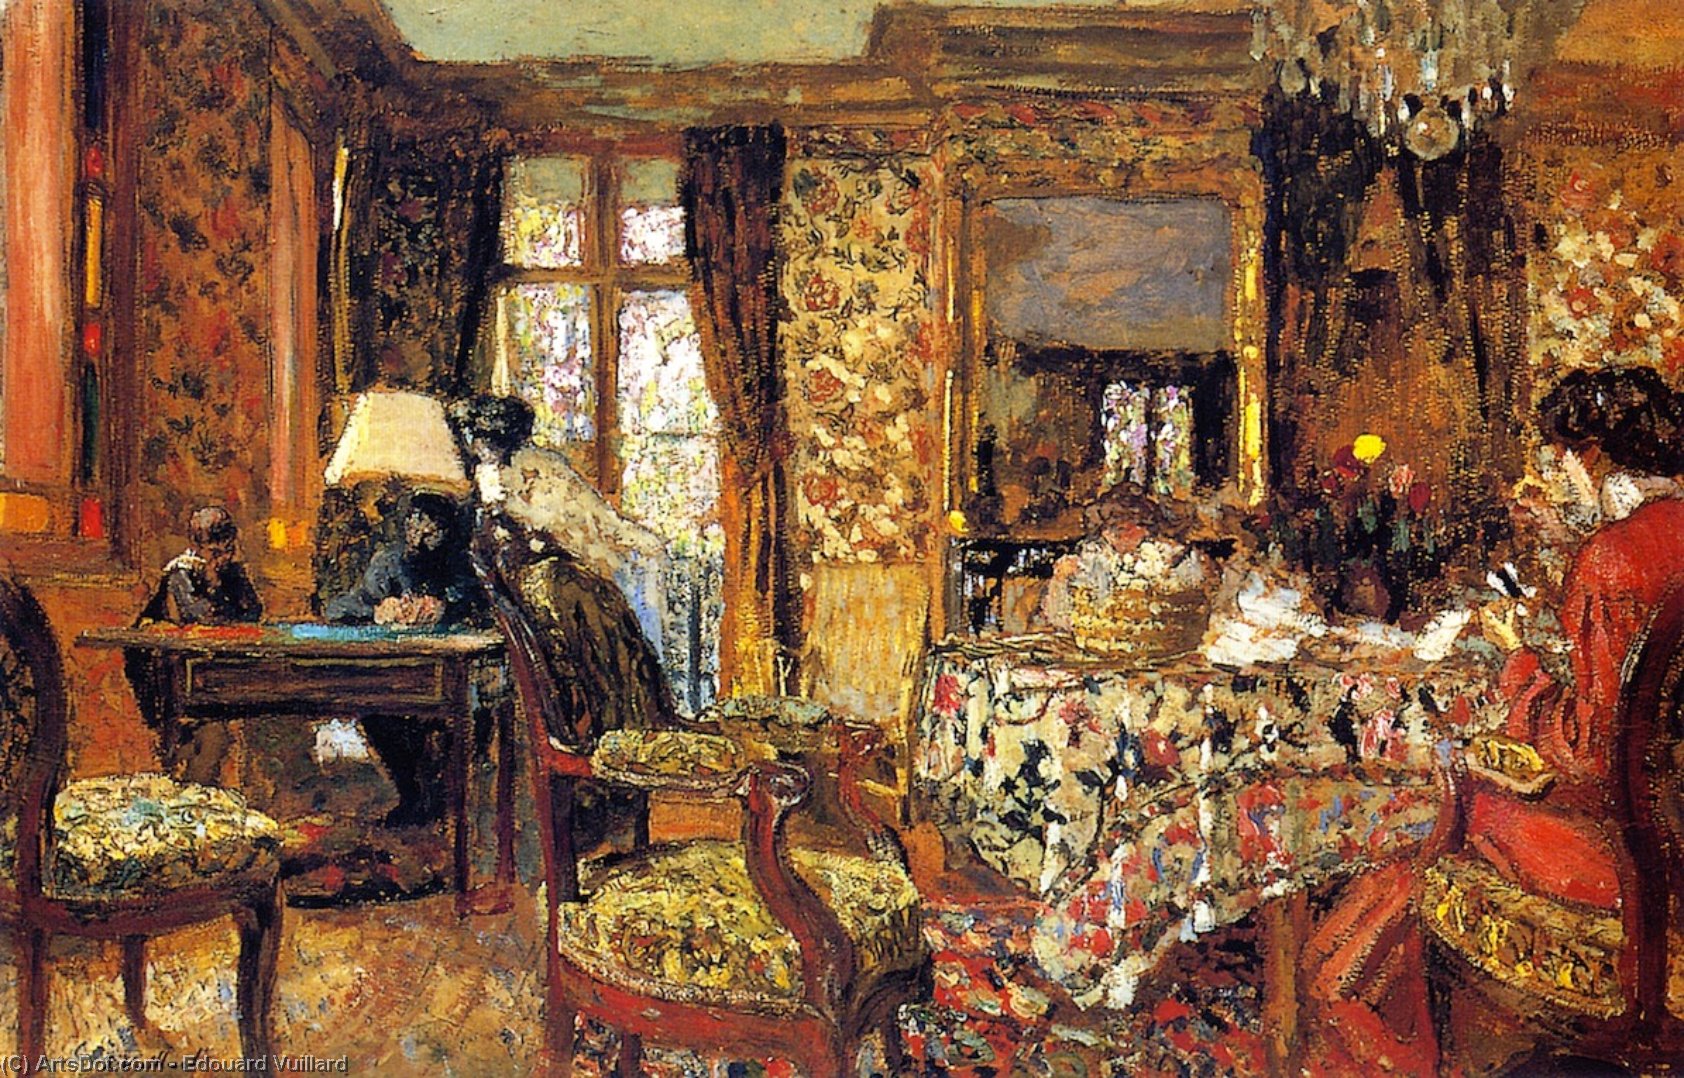 WikiOO.org - אנציקלופדיה לאמנויות יפות - ציור, יצירות אמנות Jean Edouard Vuillard - In the Room